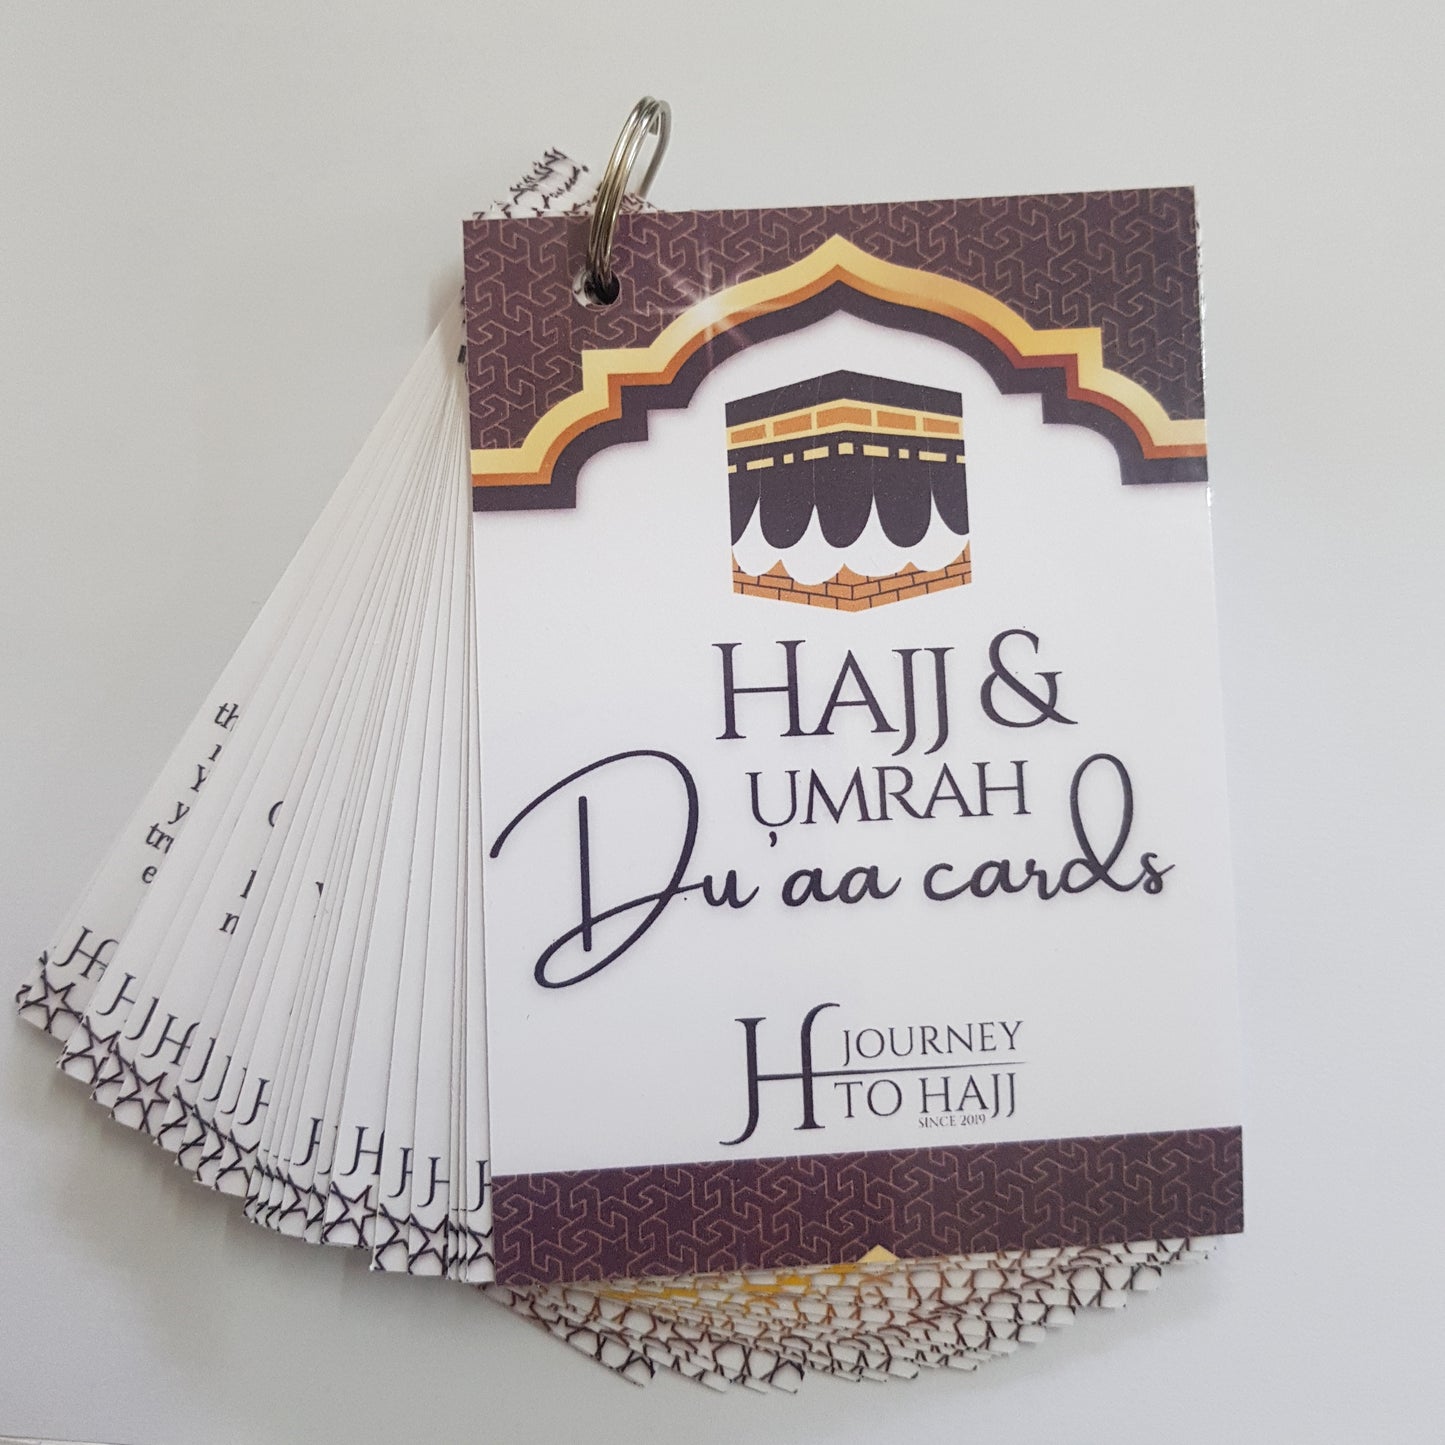 Laminated Hajj & Umrah Duaa Cards